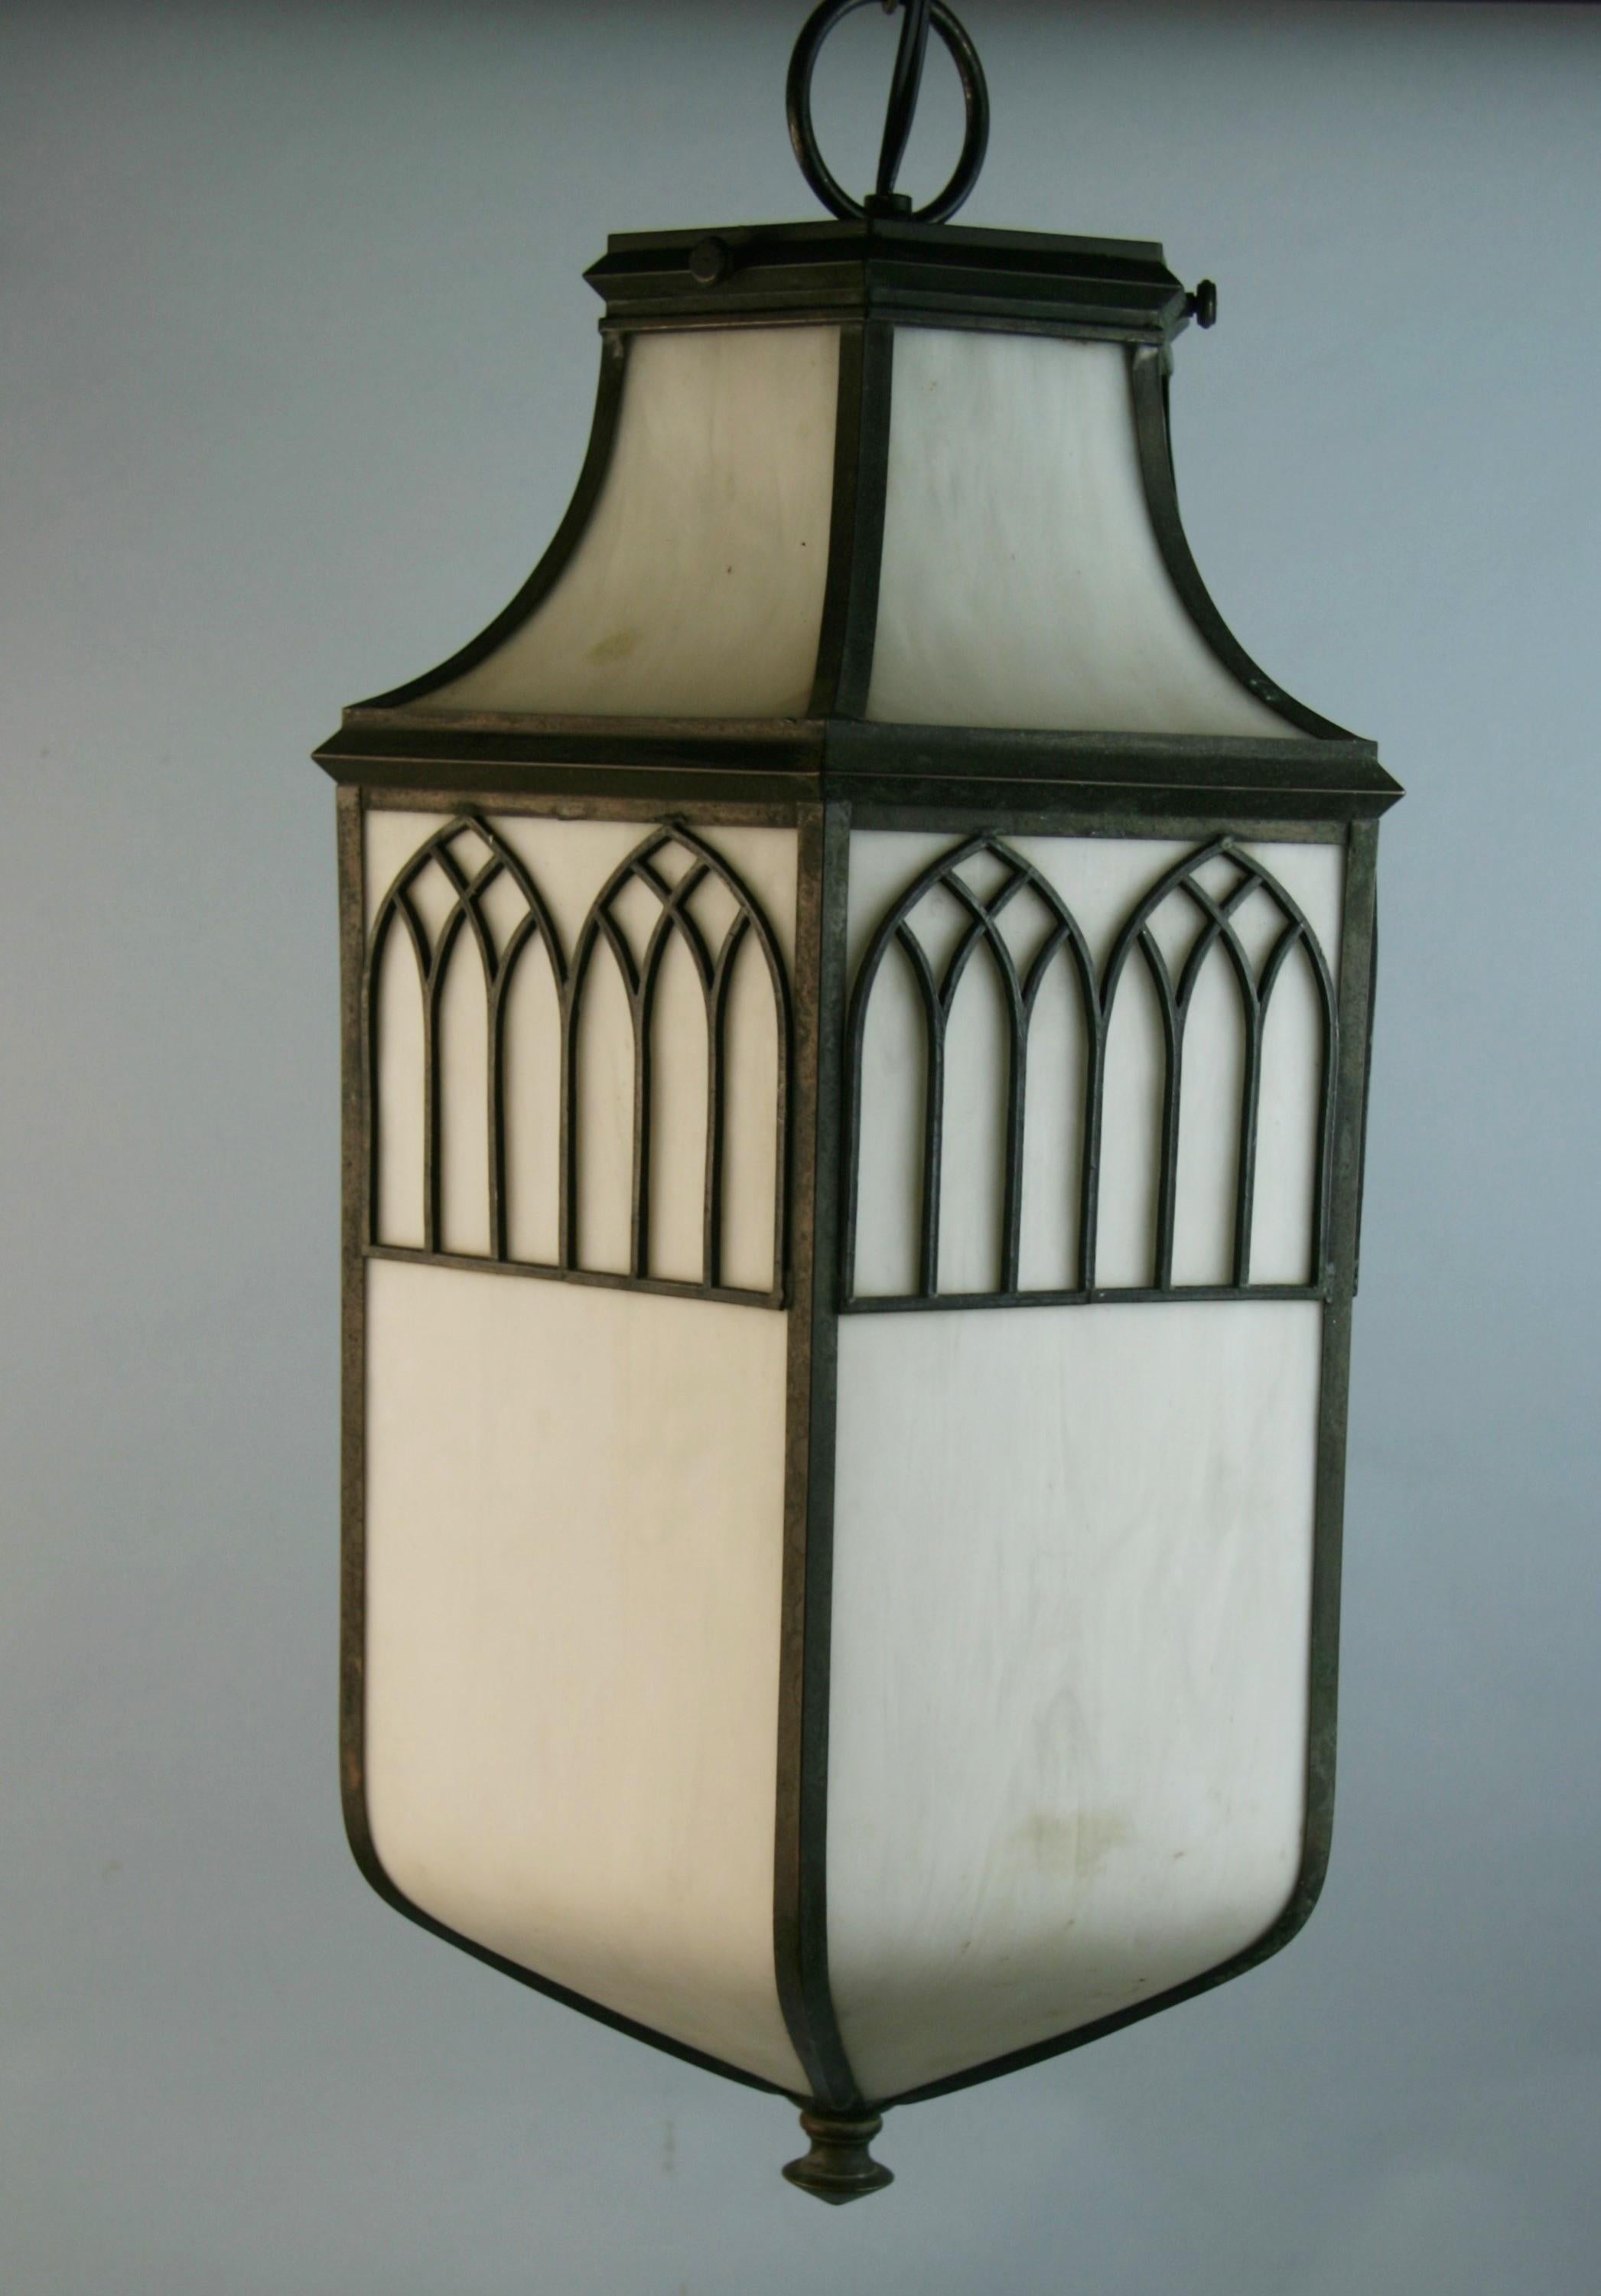 1251 Weißes Bleiglas in Bronze eingefasst.
Nehmen Sie eine 100-Watt-Edison-Glühbirne
Geliefert mit 2' Kette und Baldachin.